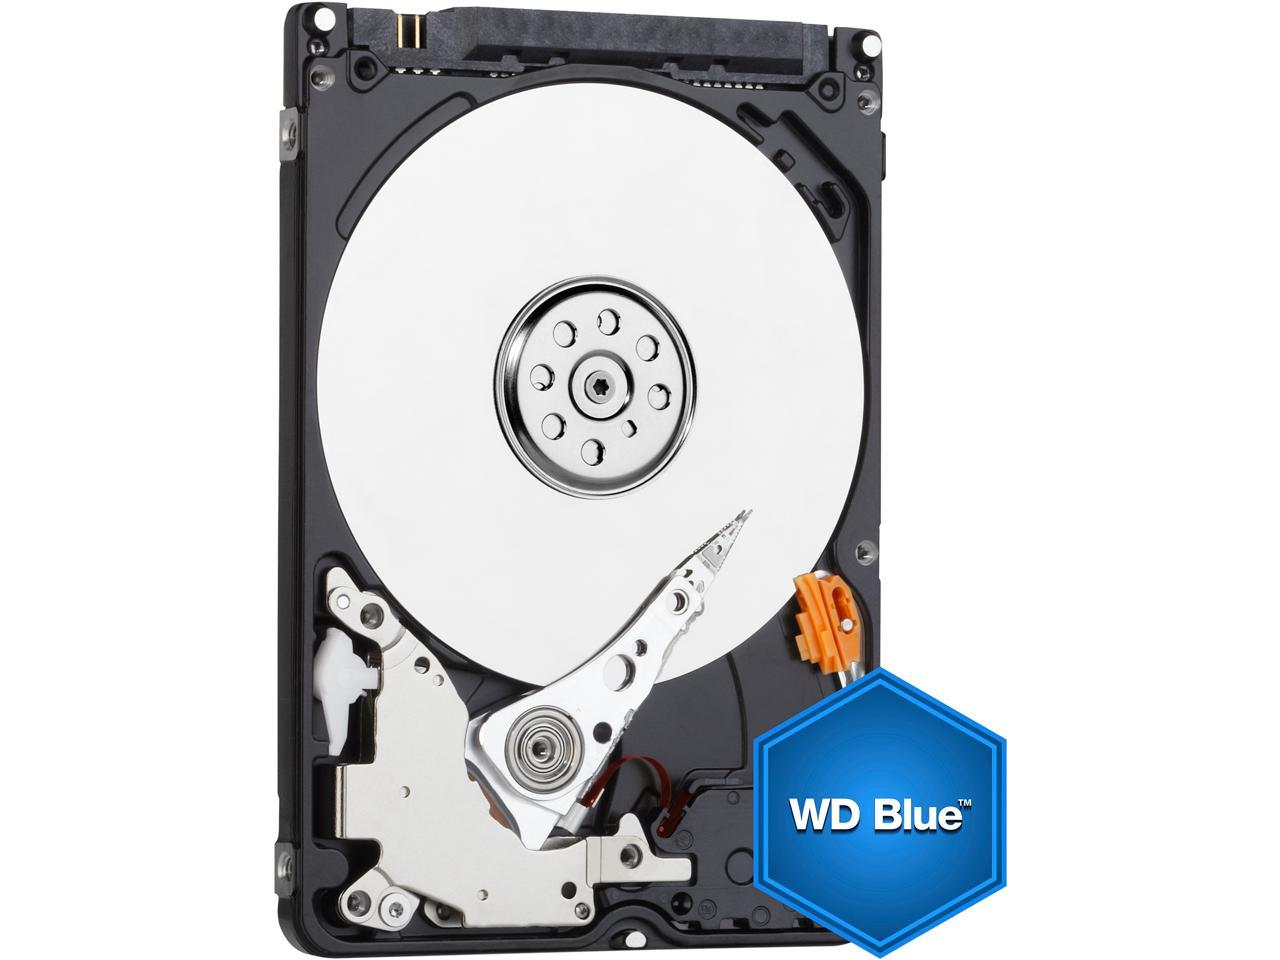 WD5000BPVT SATA HDD Western Digital Scorpio Blue 500GB Internal 5400RPM 2.5" 